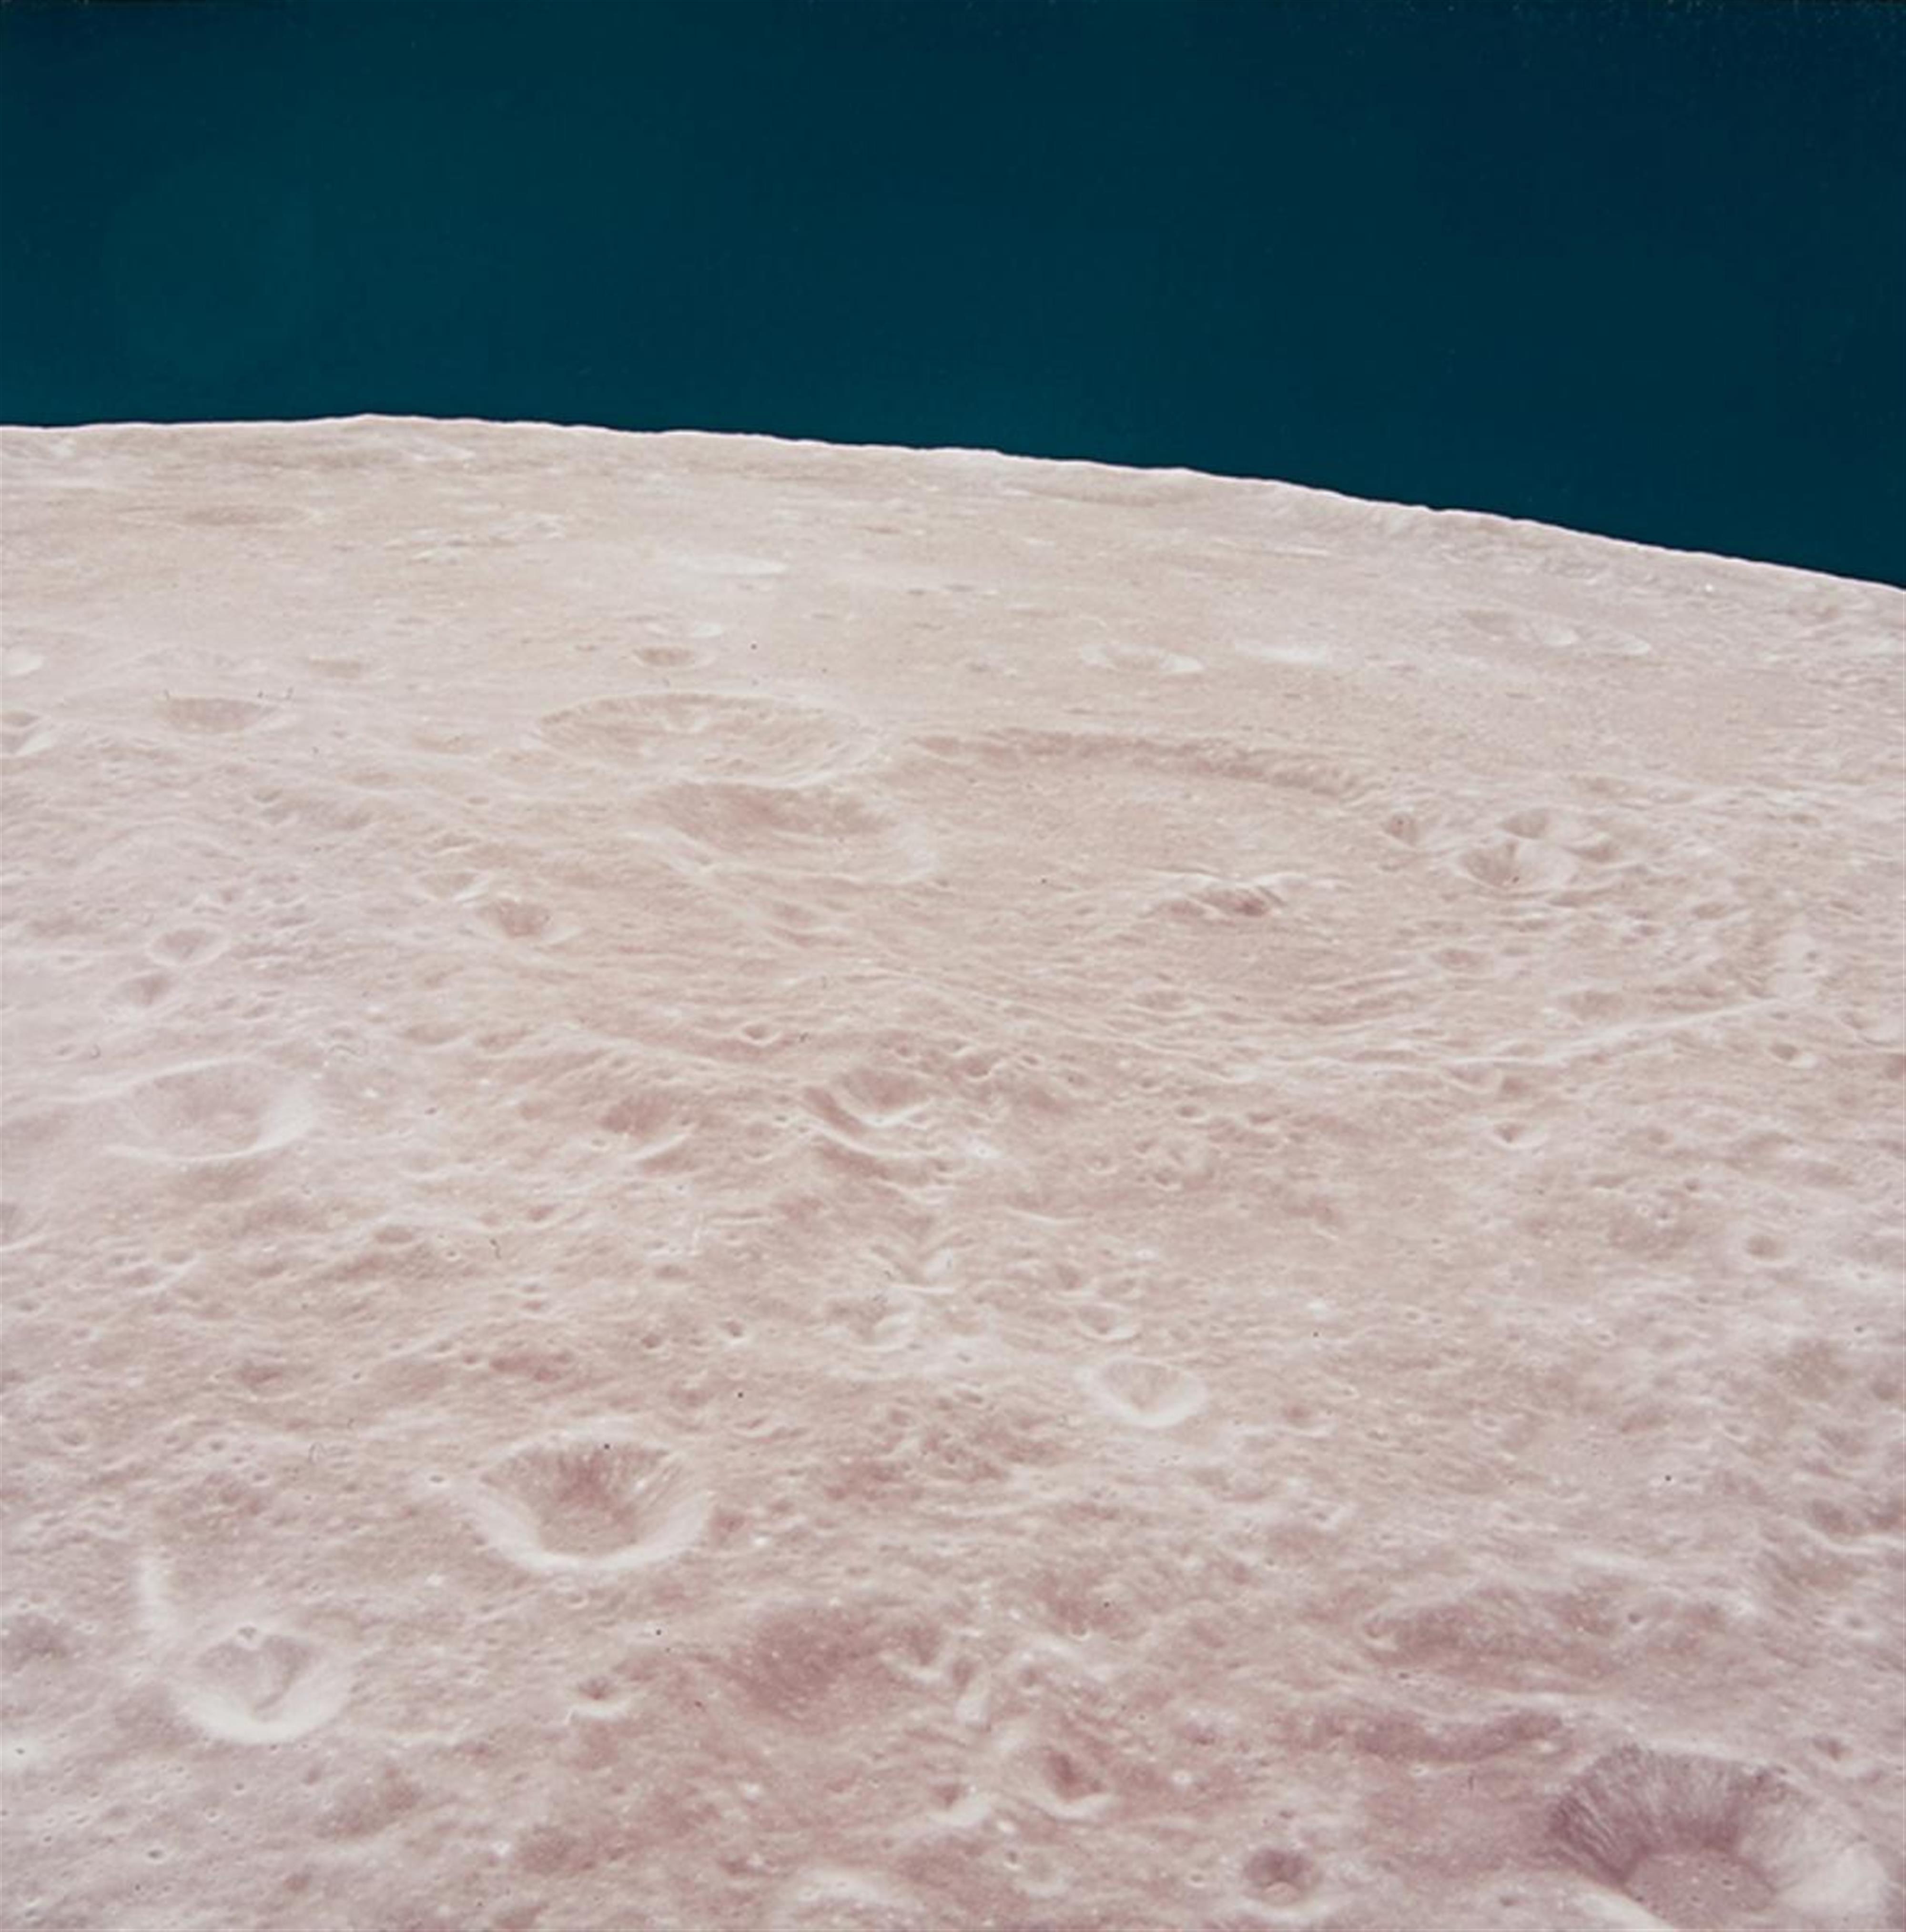 NASA - Moon view, Apollo 11 - image-2